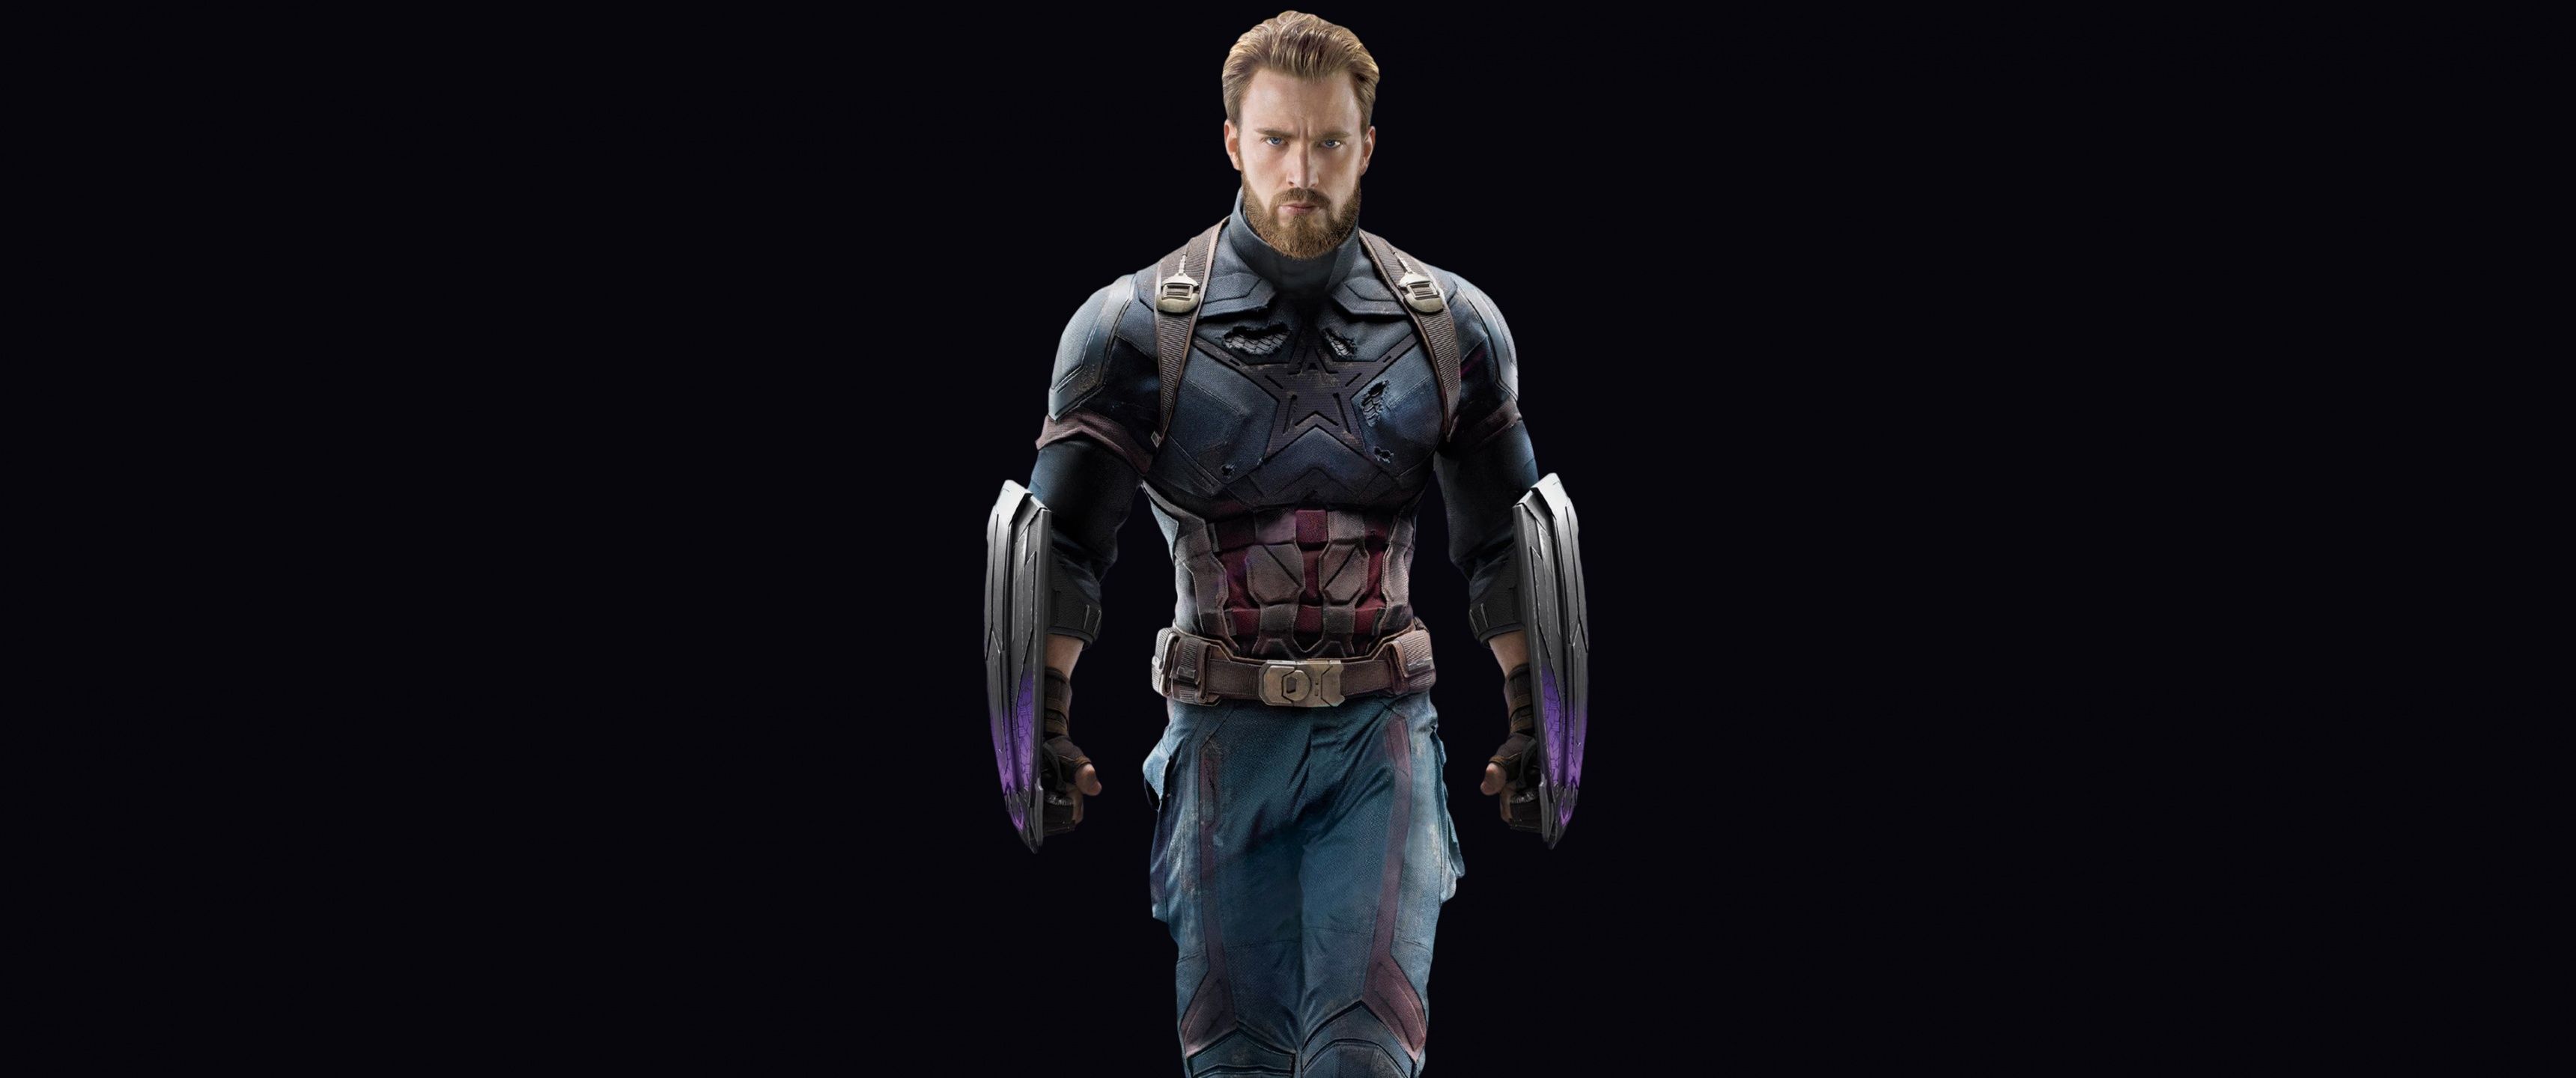 Captain America Wallpaper 4K, Avengers: Infinity War, Black Dark